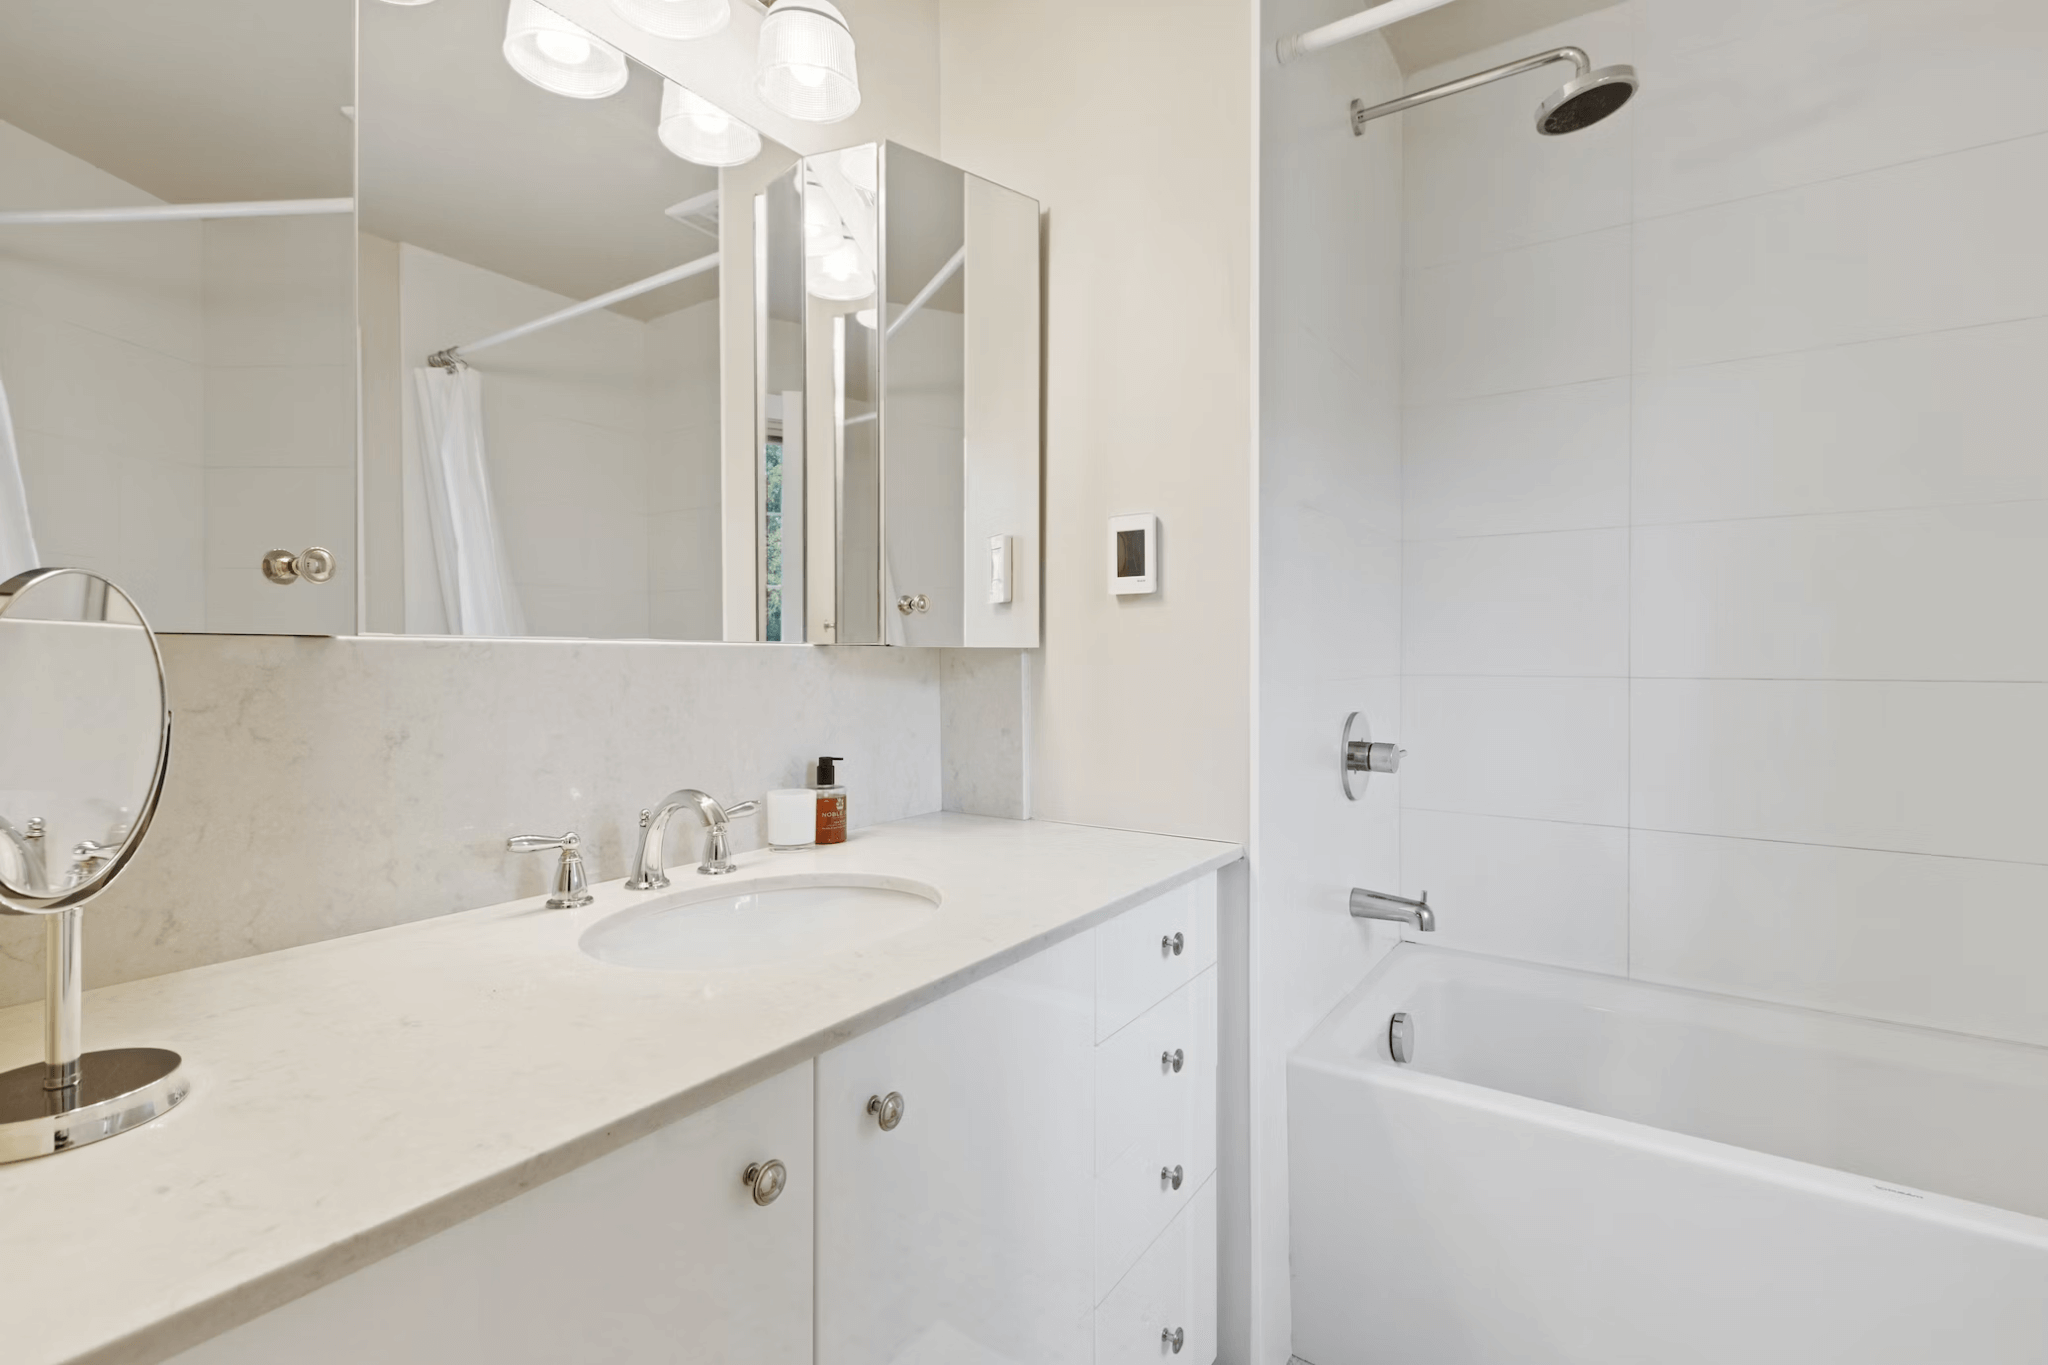 10 manieren waarop passend badkamermeubilair uw ruimte naar een hoger niveau kan tillen